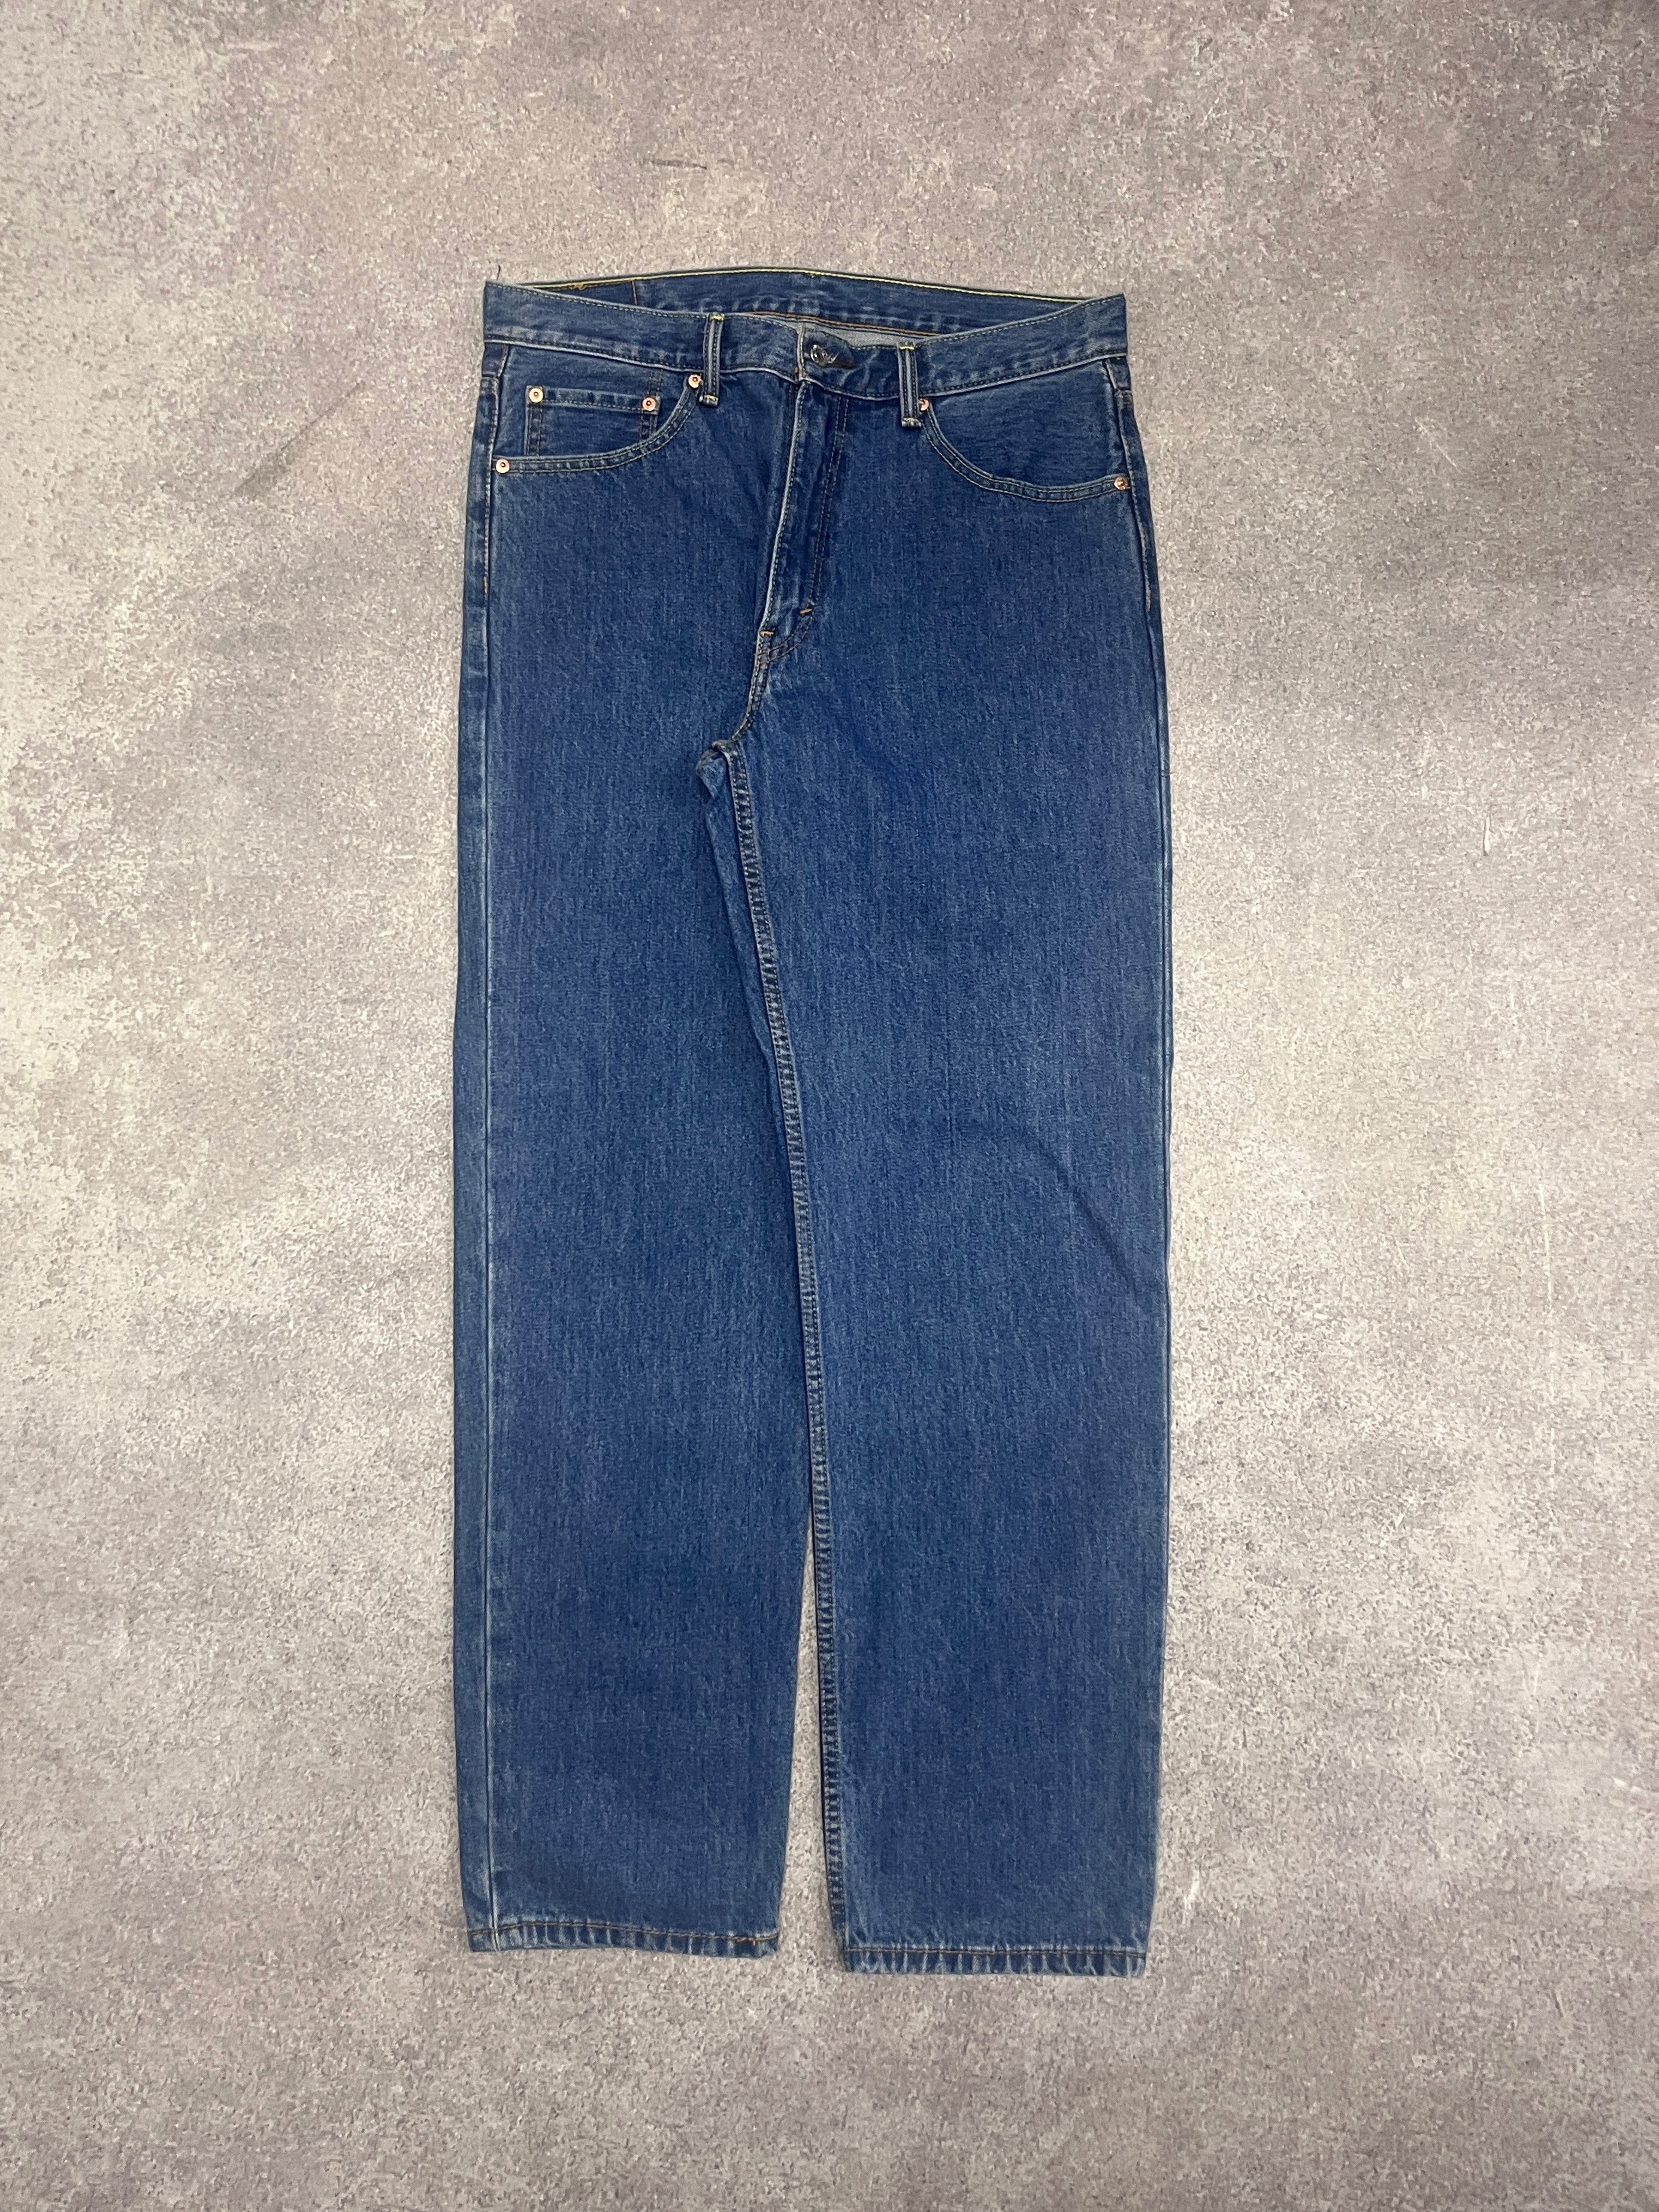 Vintage Levi 550 Denim Jeans Blue // W34 L32 - RHAGHOUSE VINTAGE